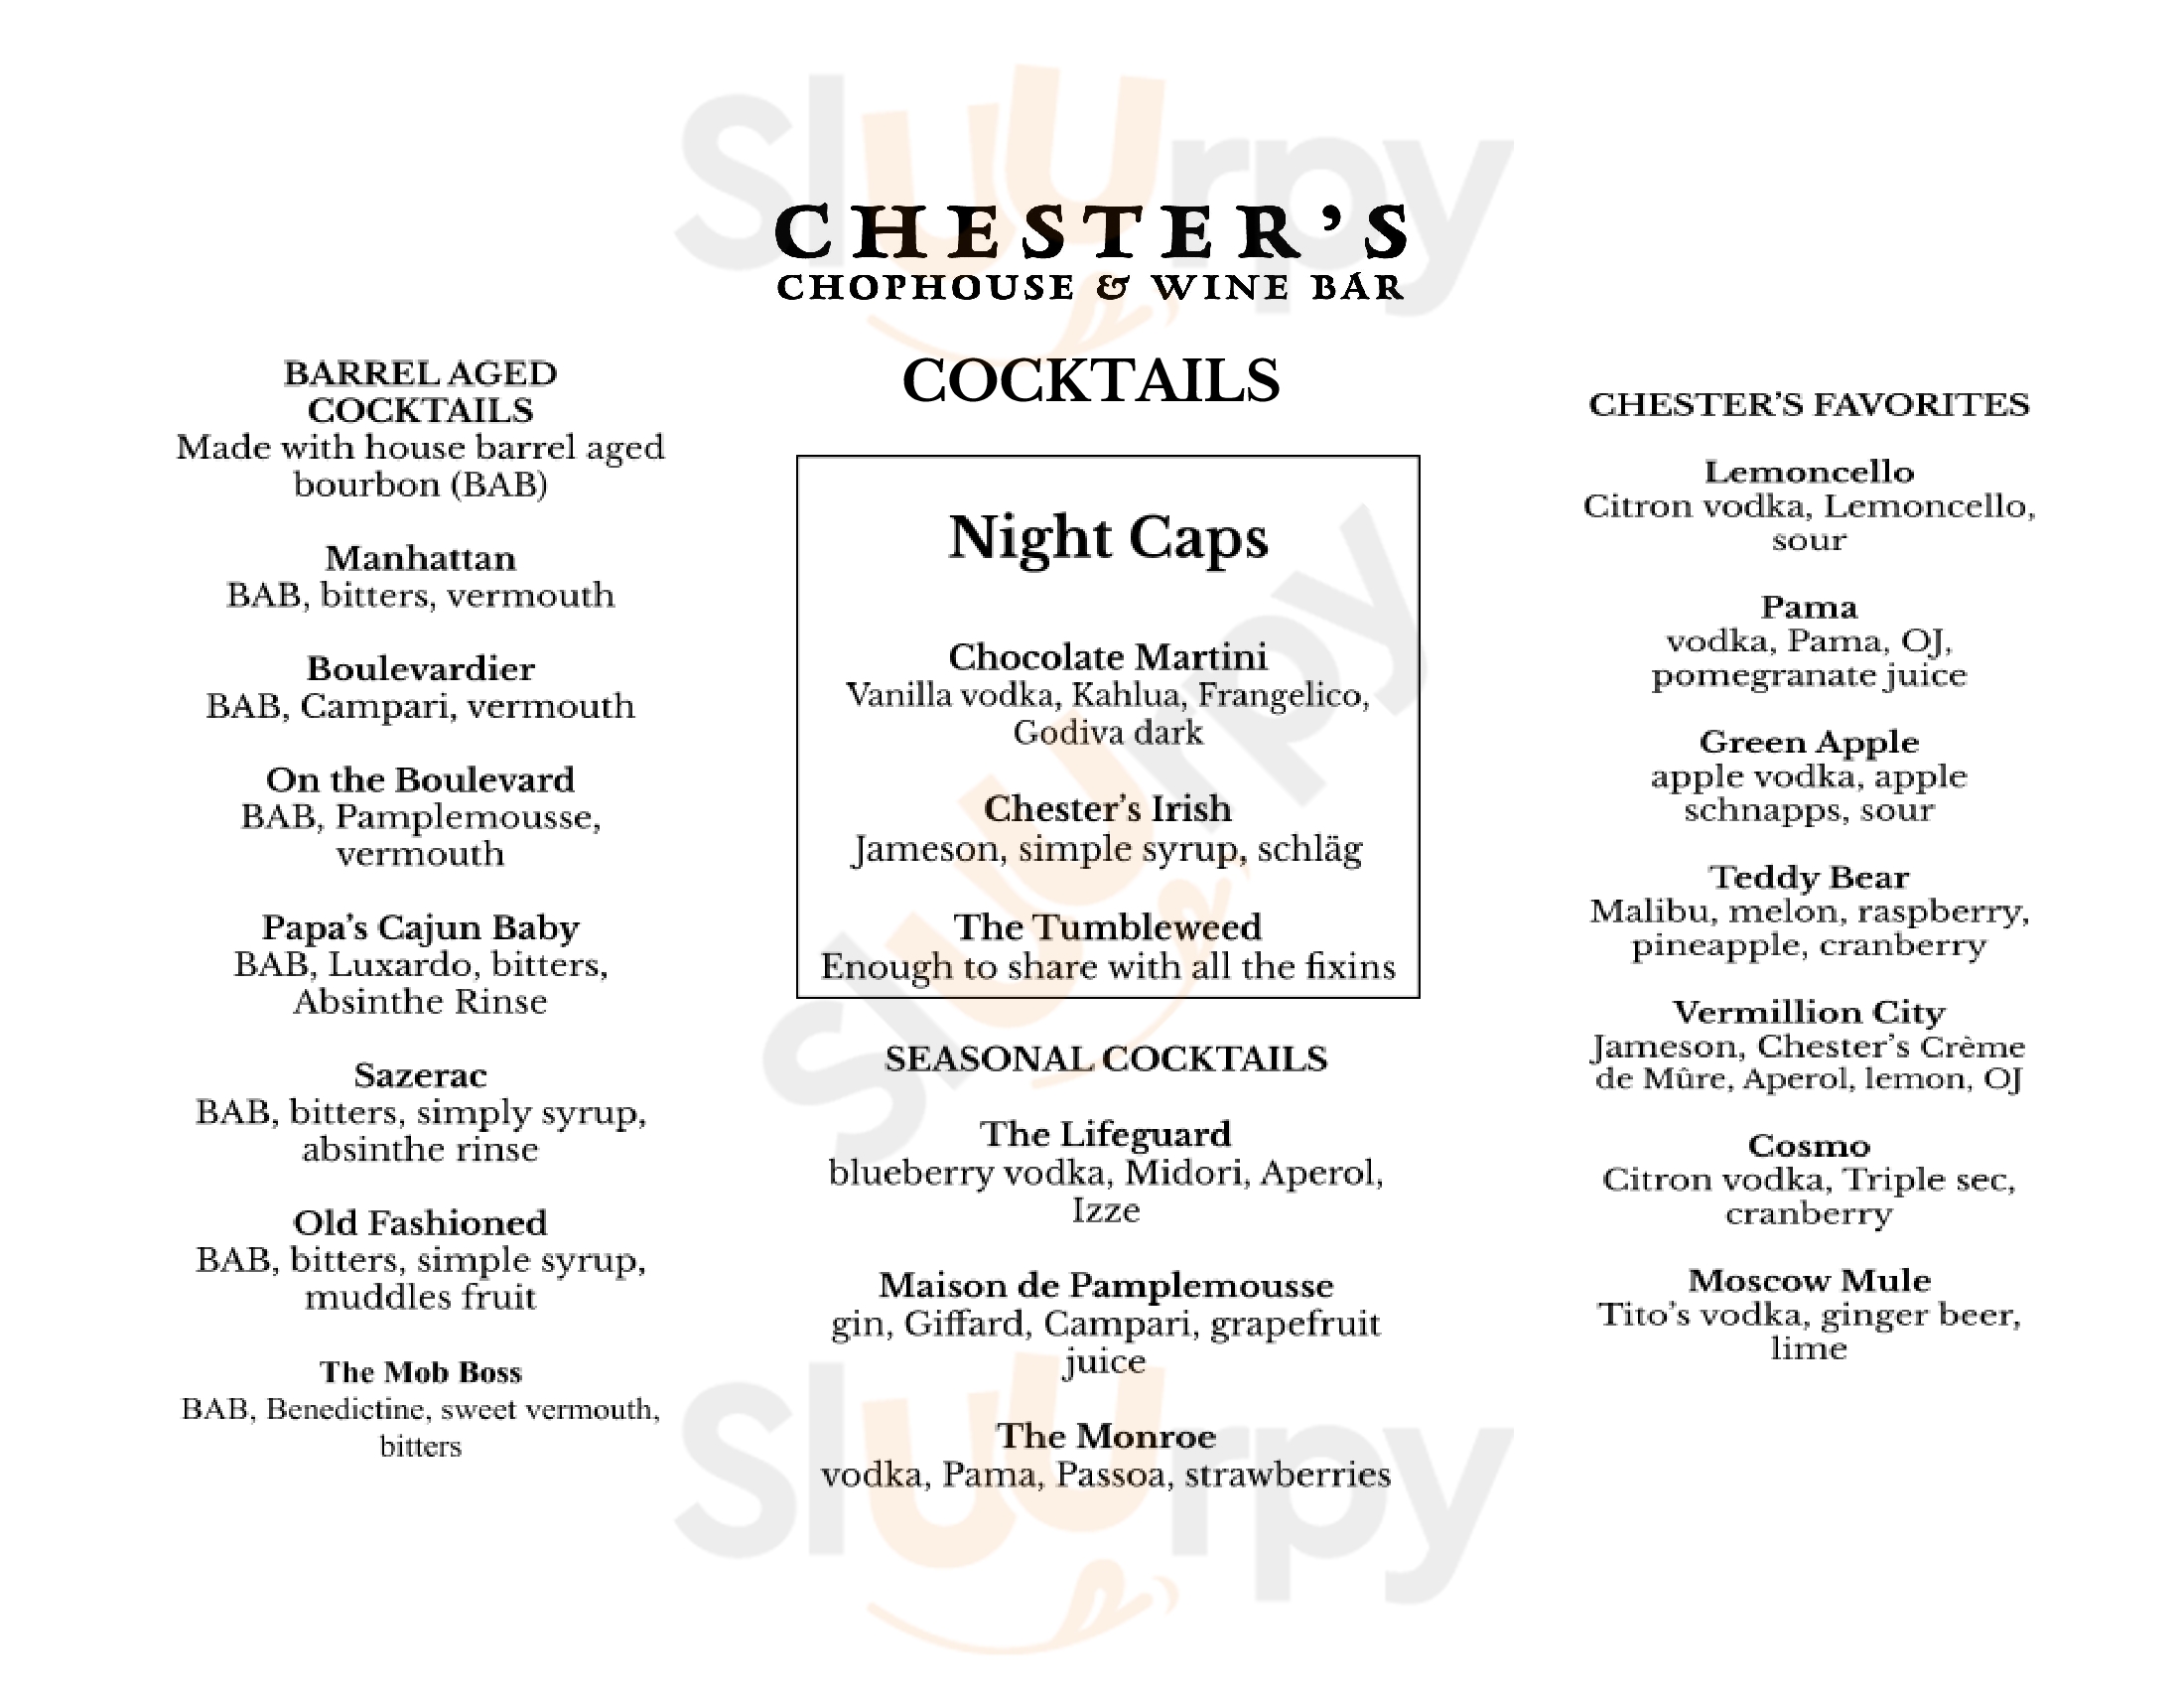 Chester's Chophouse And Wine Bar Wichita Menu - 1